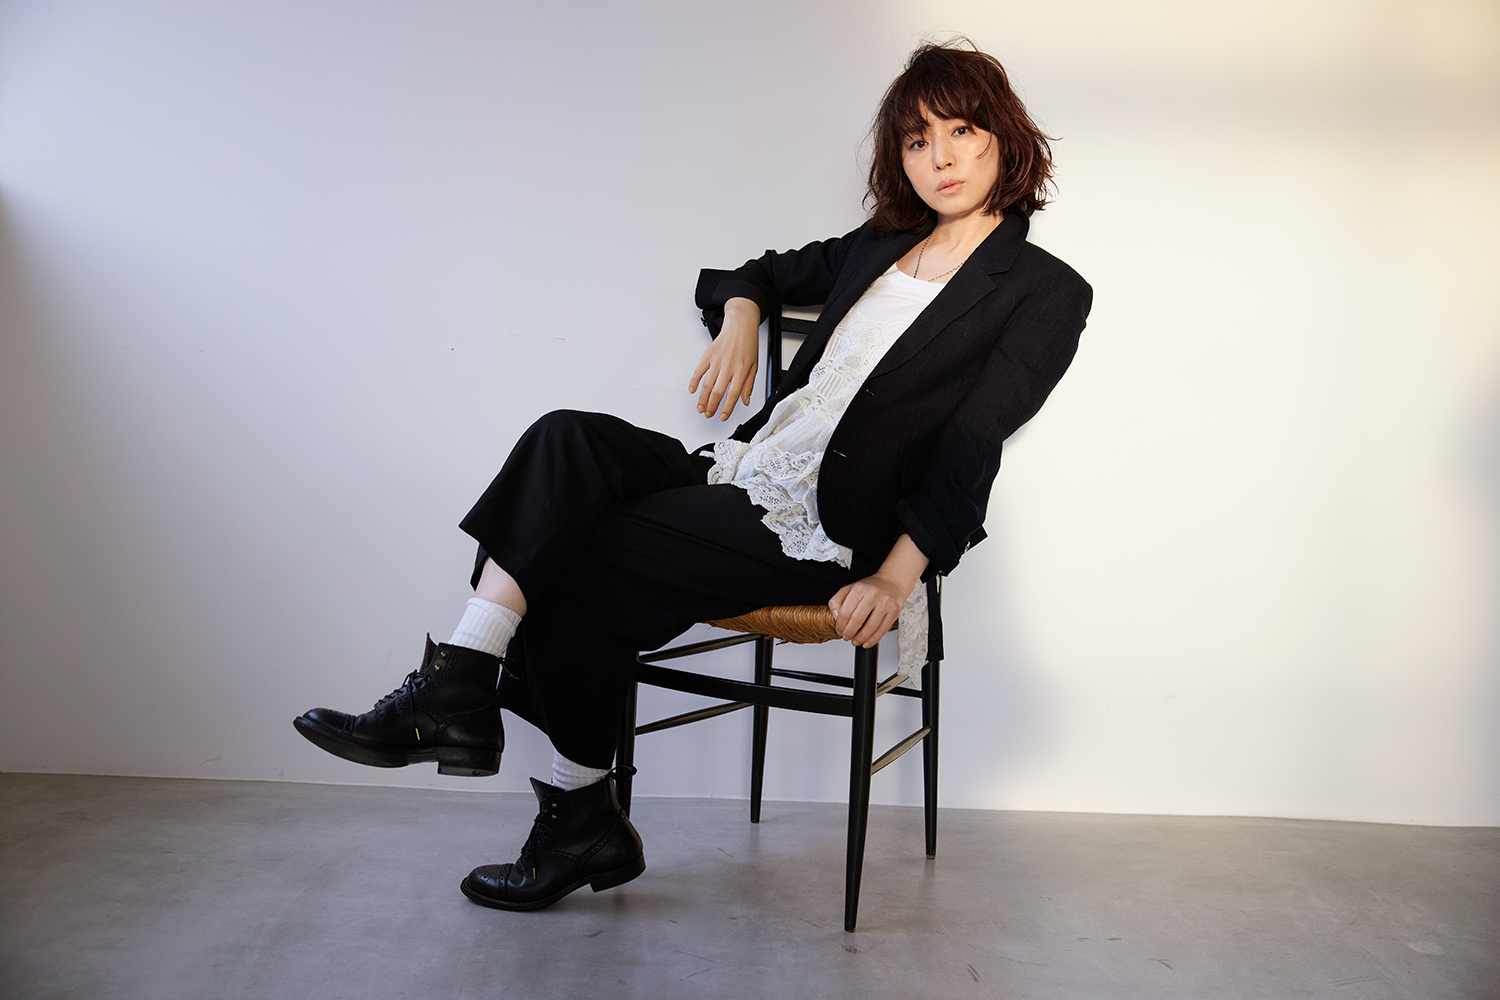 女優・石田ゆり子の音楽活動プロジェクトlily、特典付き初ミニアルバム「リトルソング」本日発売「音楽への扉がわたしの人生に存在していることが幸せでなりません」  | Musicman